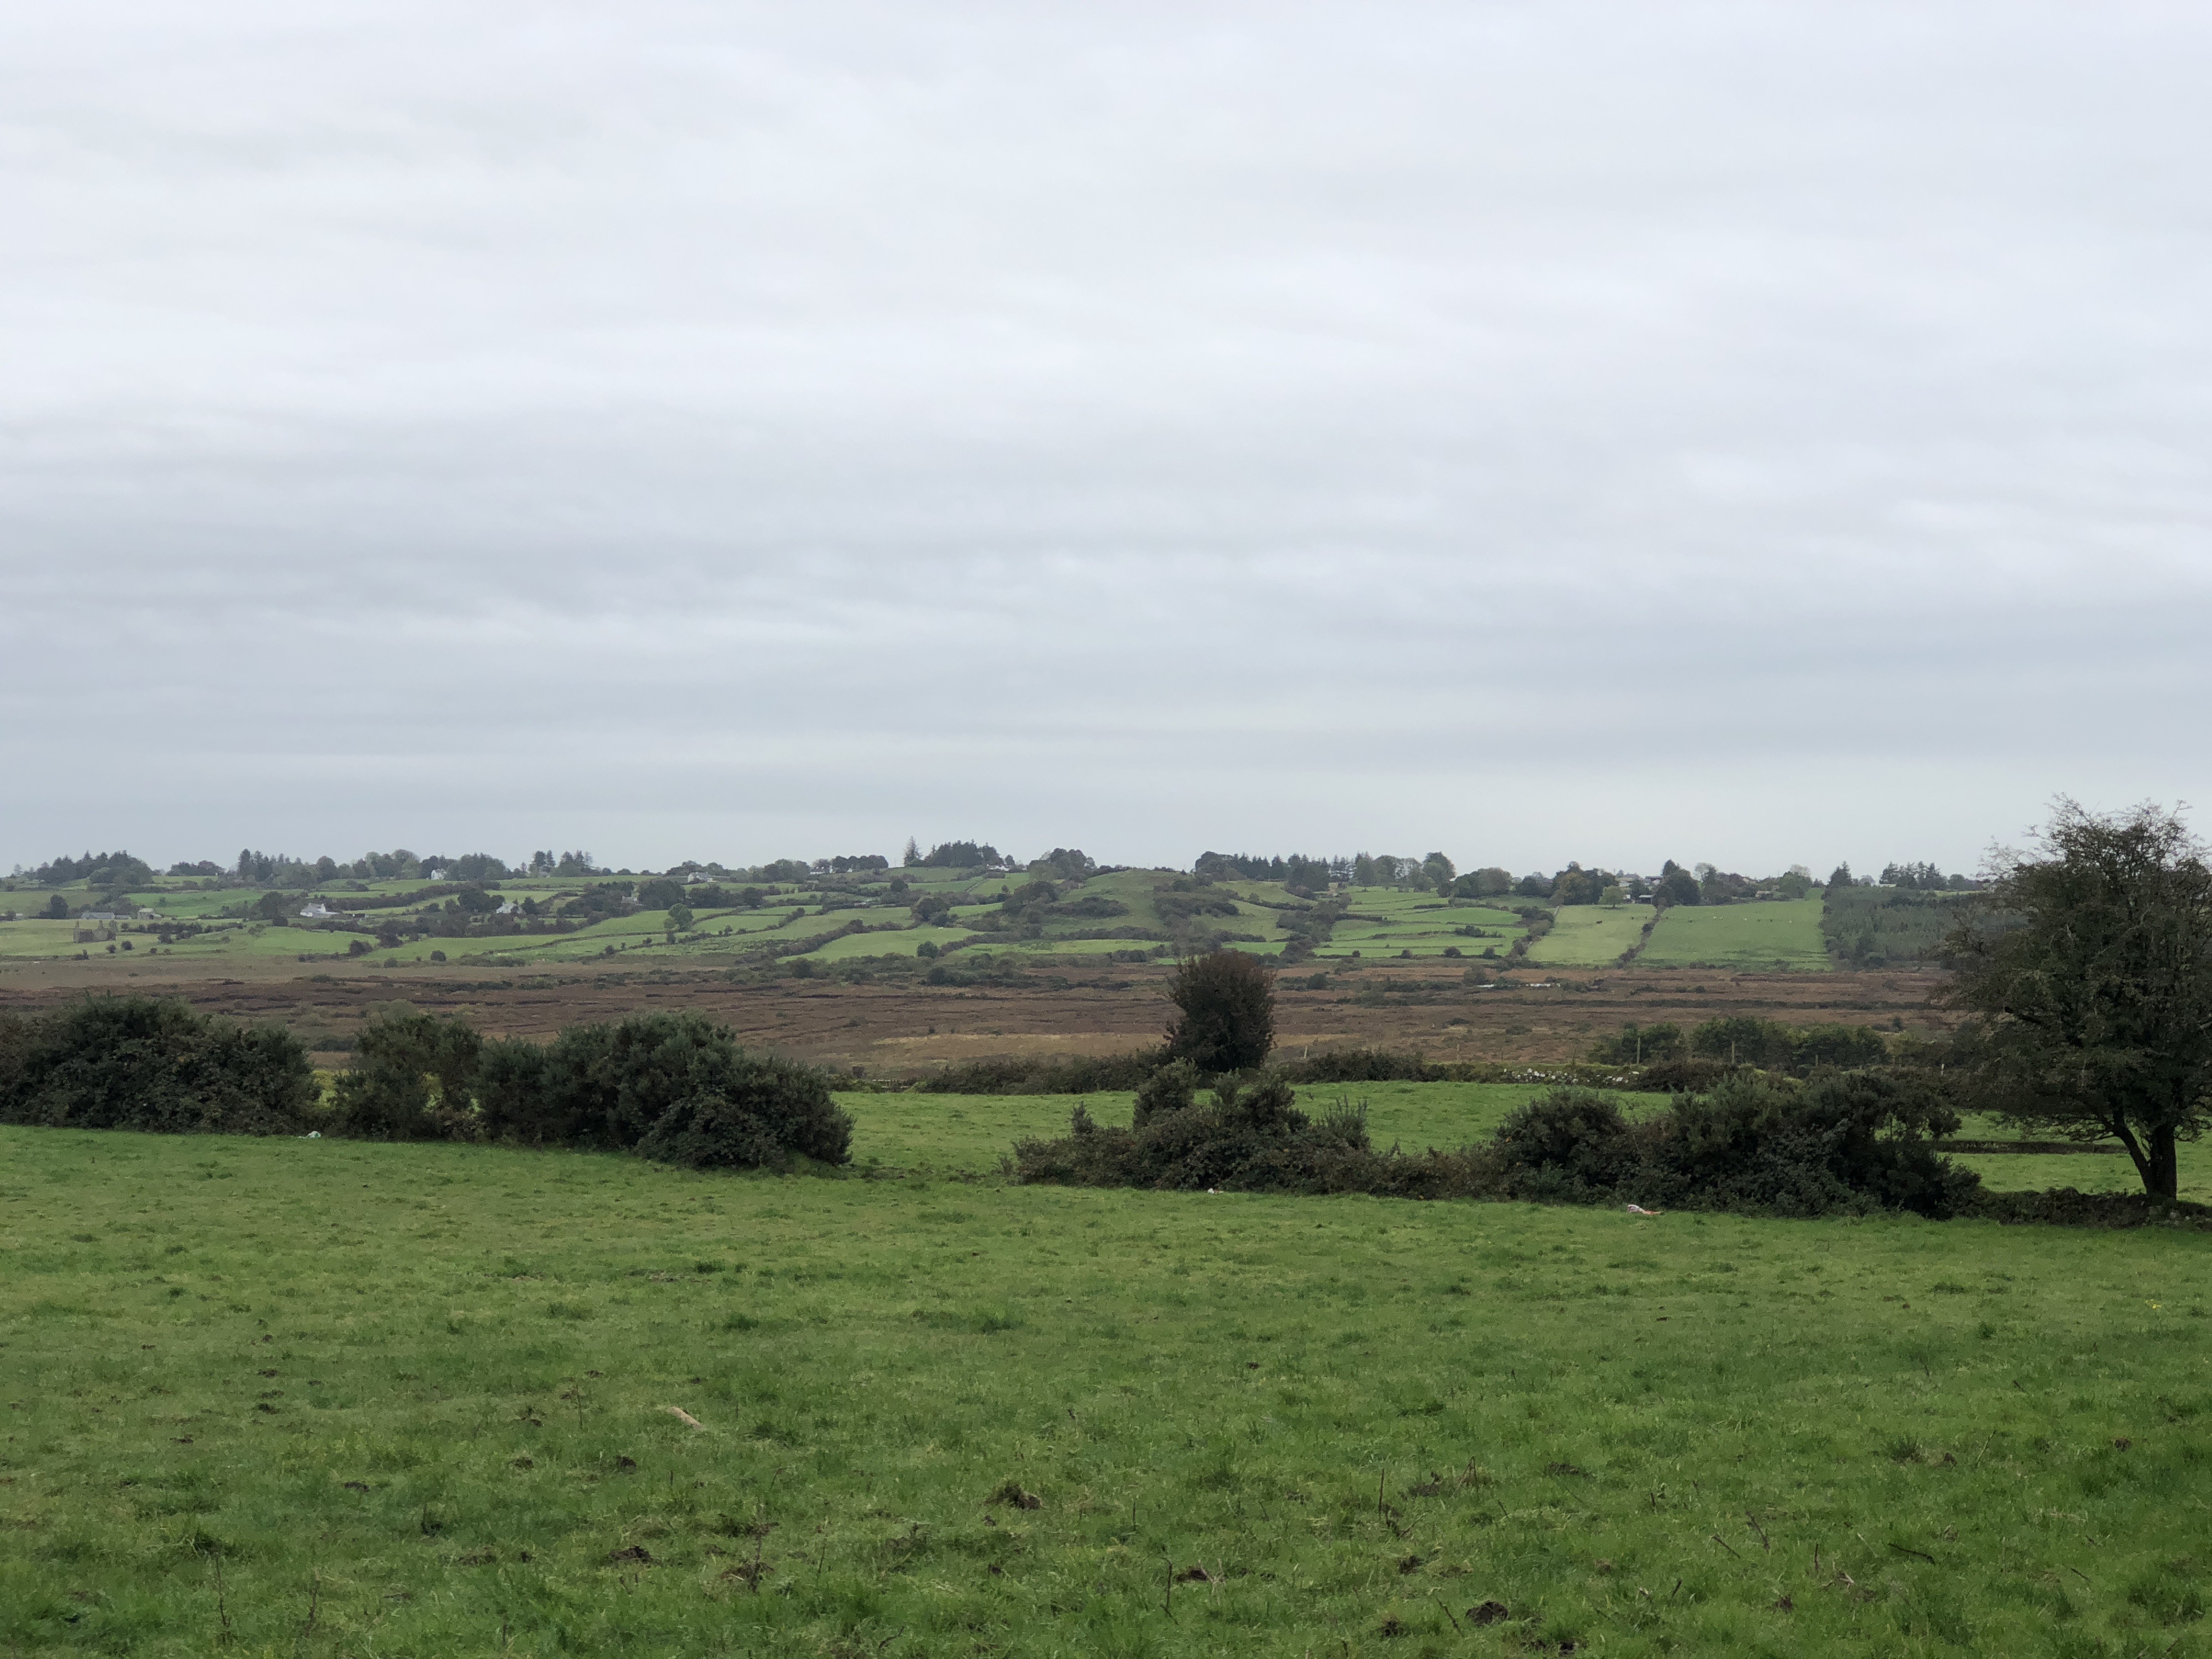 Image of fields in Ireland